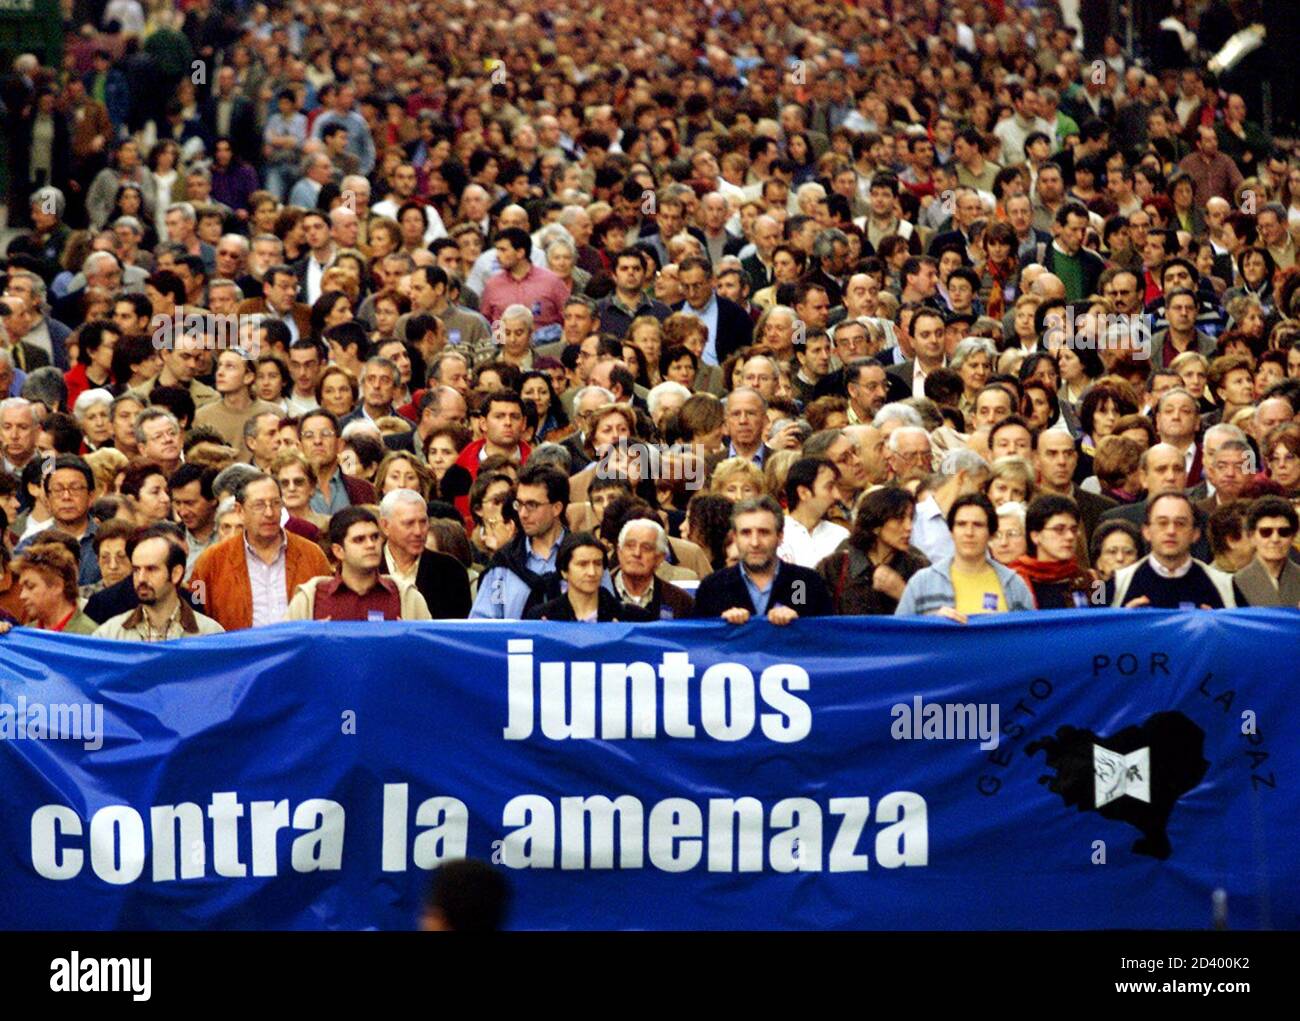 MILES DE PARTIDARIOS DEL GRUPO PACIFISTA VASCO 'GESTO POR LA PAZ' (GESTO POR LA PAZ) MARCHAN POR EL CENTRO DE BILBAO. Miles de partidarios del grupo de paz basado en el país Vasco "Gesto por la Paz" (gesto por la Paz) llevan una pancarta que dice "juntos contra la amenaza" durante una marcha por el centro de Bilbao el 2 de febrero de 2002, Celebrar el decimoquinto aniversario de la Organización y comemorar la asación del líder indio Mahatma Gandhi. La organización separatista vasca ETA, que ha sido llamada un "grupo terrorista" por la UE, ha matado a más de 800 personas desde entonces Foto de stock